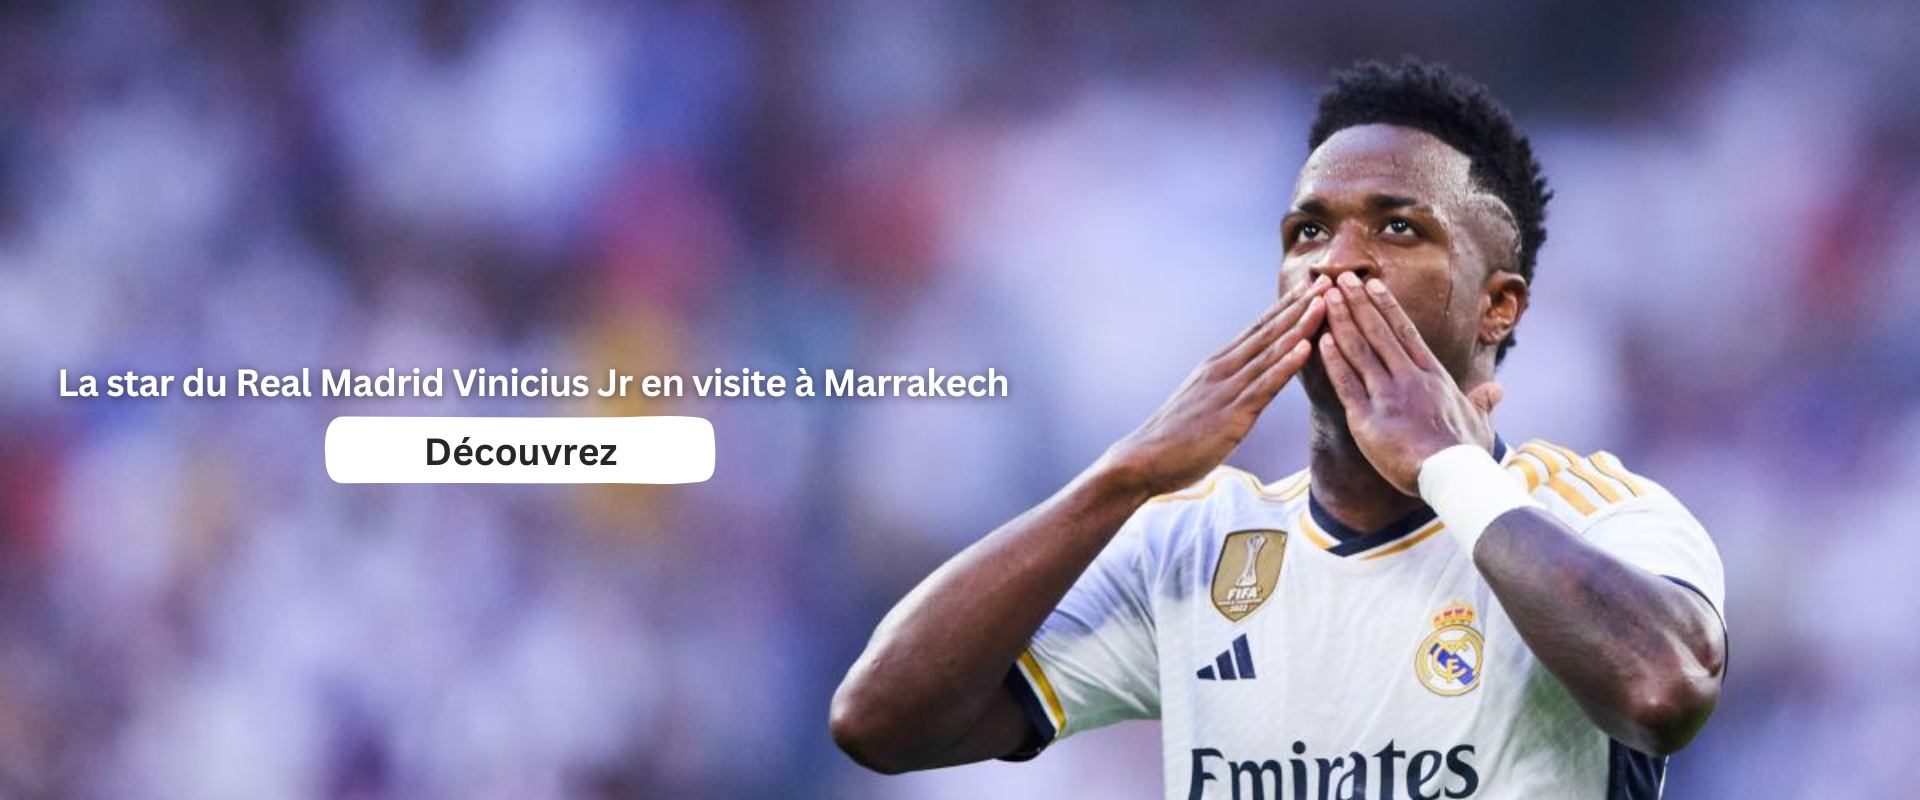 La star du Real Madrid Vinicius Jr en visite à Marrakech